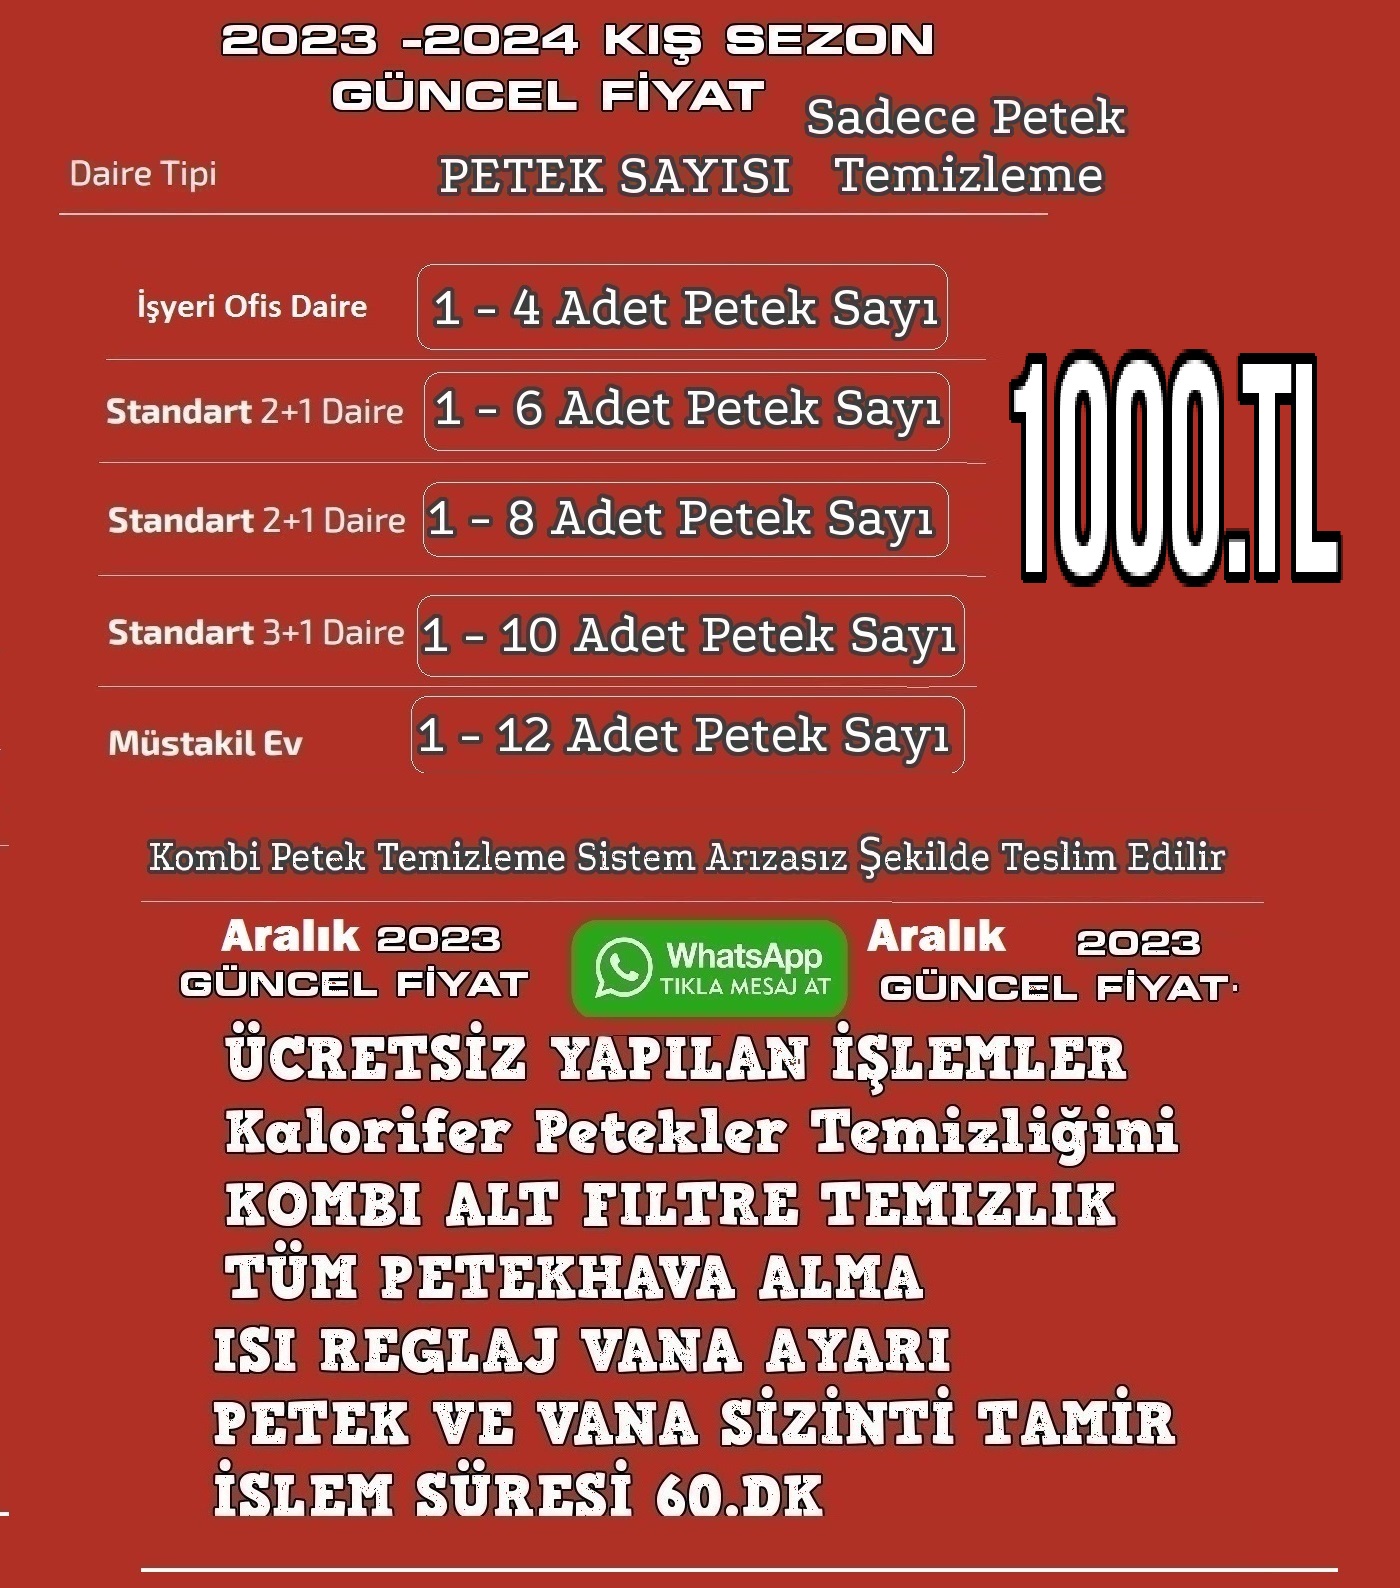 Anadolu Kavağı Kombi Petek Temizliği-Anadolu Kavağı Kombi Petek Temizleme | Kombi Petek Temizliği Anadolu Kavağı.